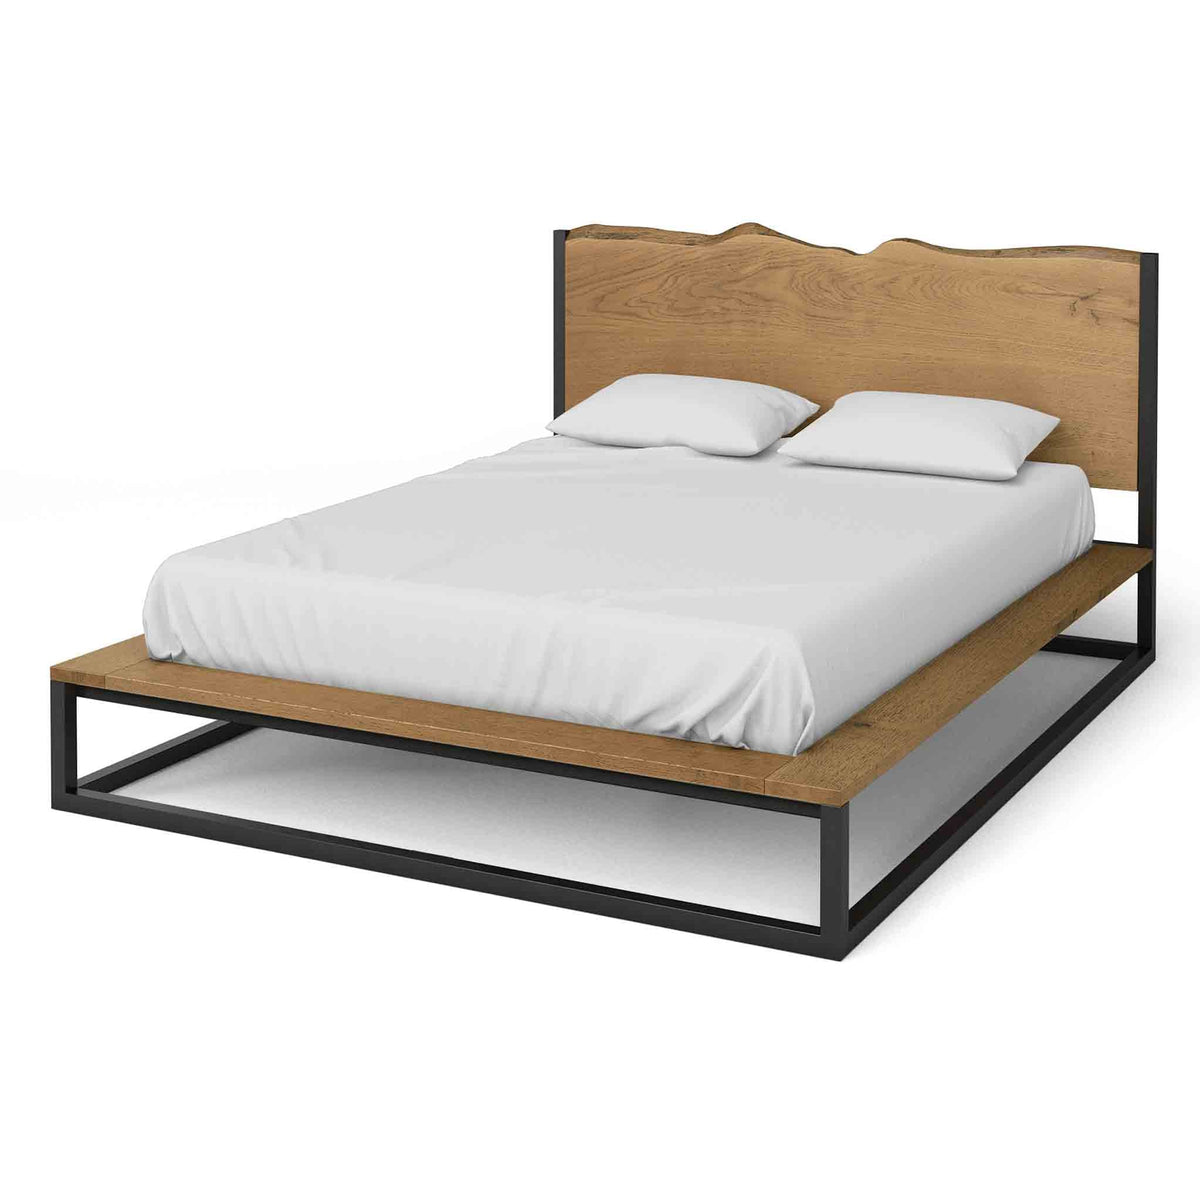 Oak Mill 5' King Size Platform Bed Frame - Waxed Oak